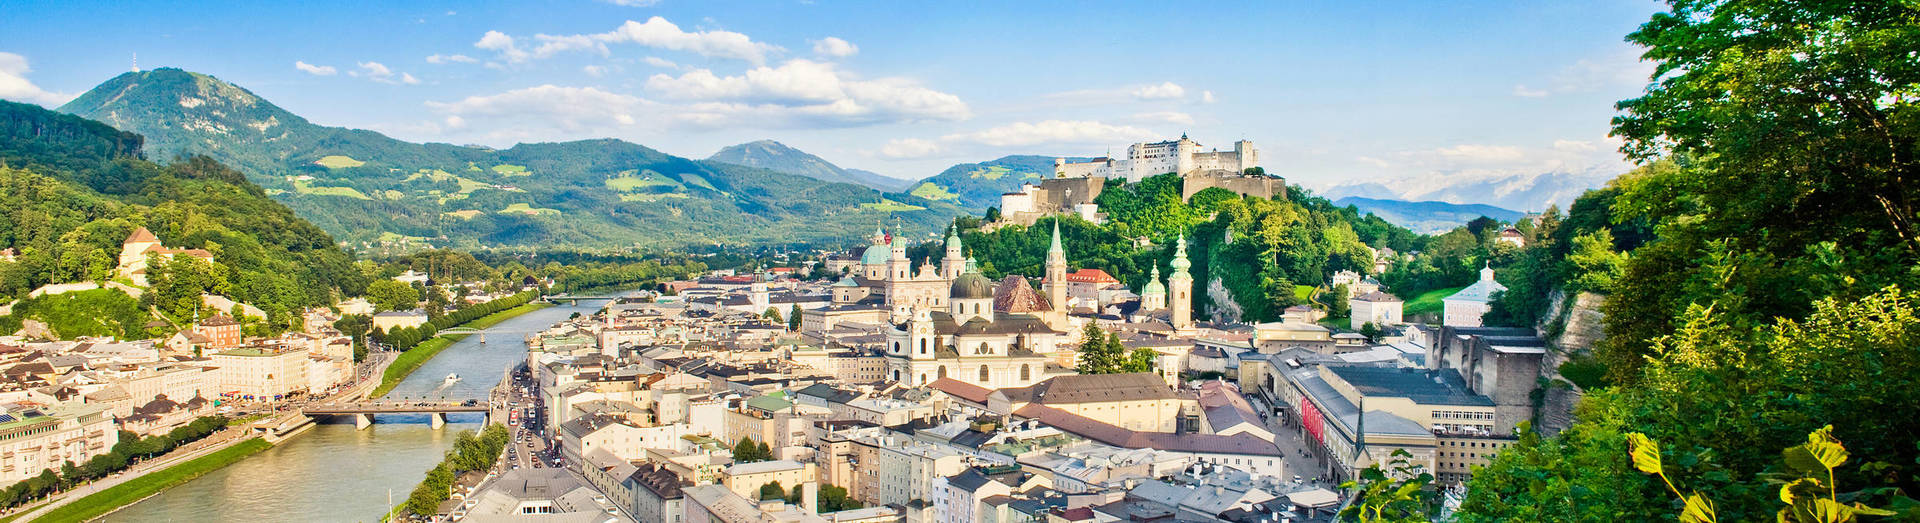 Die Sehenswürdigkeiten von Salzburg – einfach sehenswürdig!